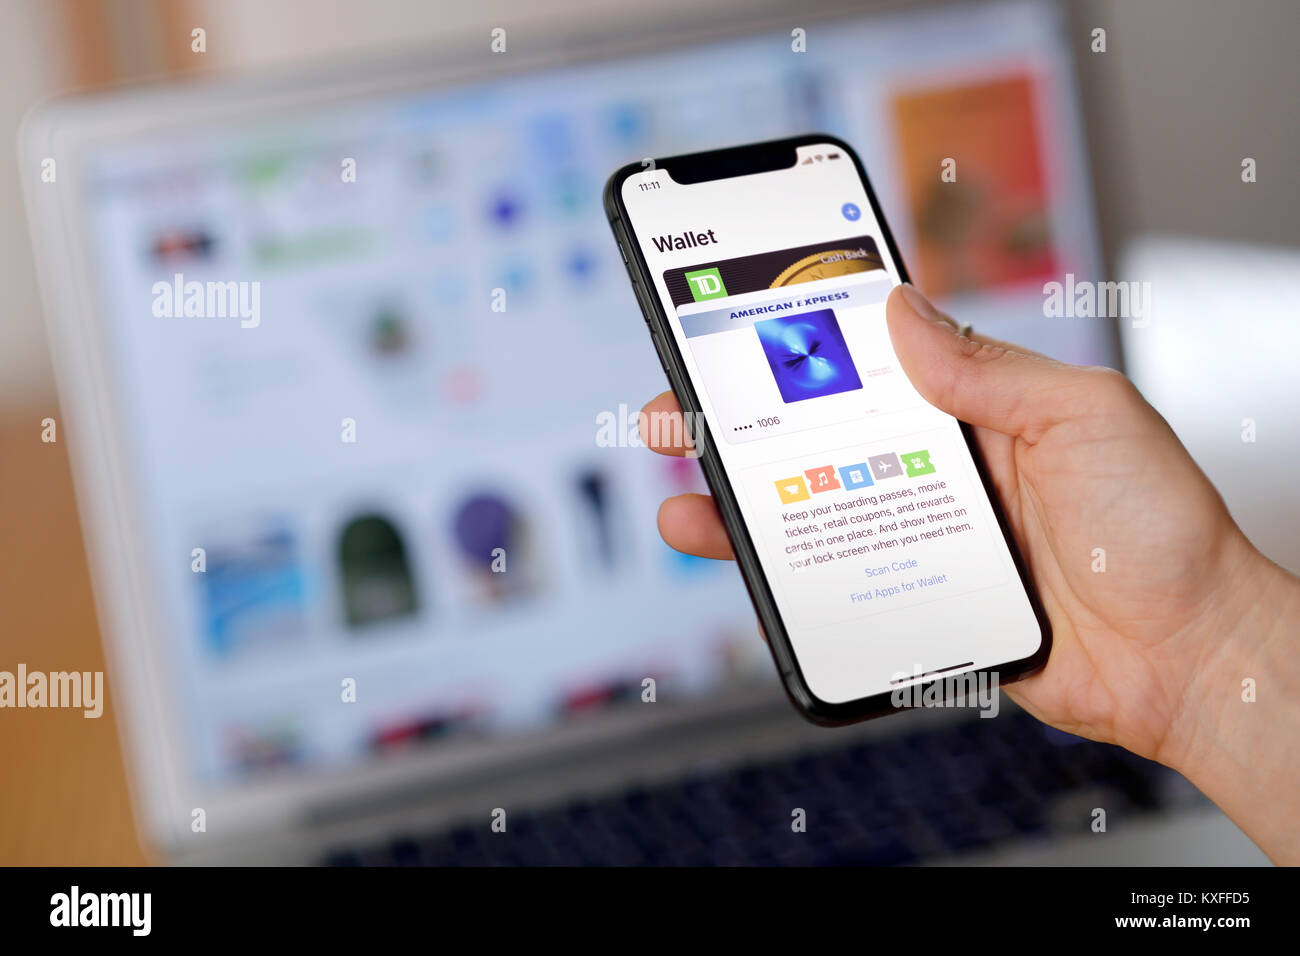 Libre d'une femme avec l'iPhone X dans sa main installer Apple Wallet, un paiement électronique app qui stocke les cartes de crédit pour les achats en ligne. Banque D'Images